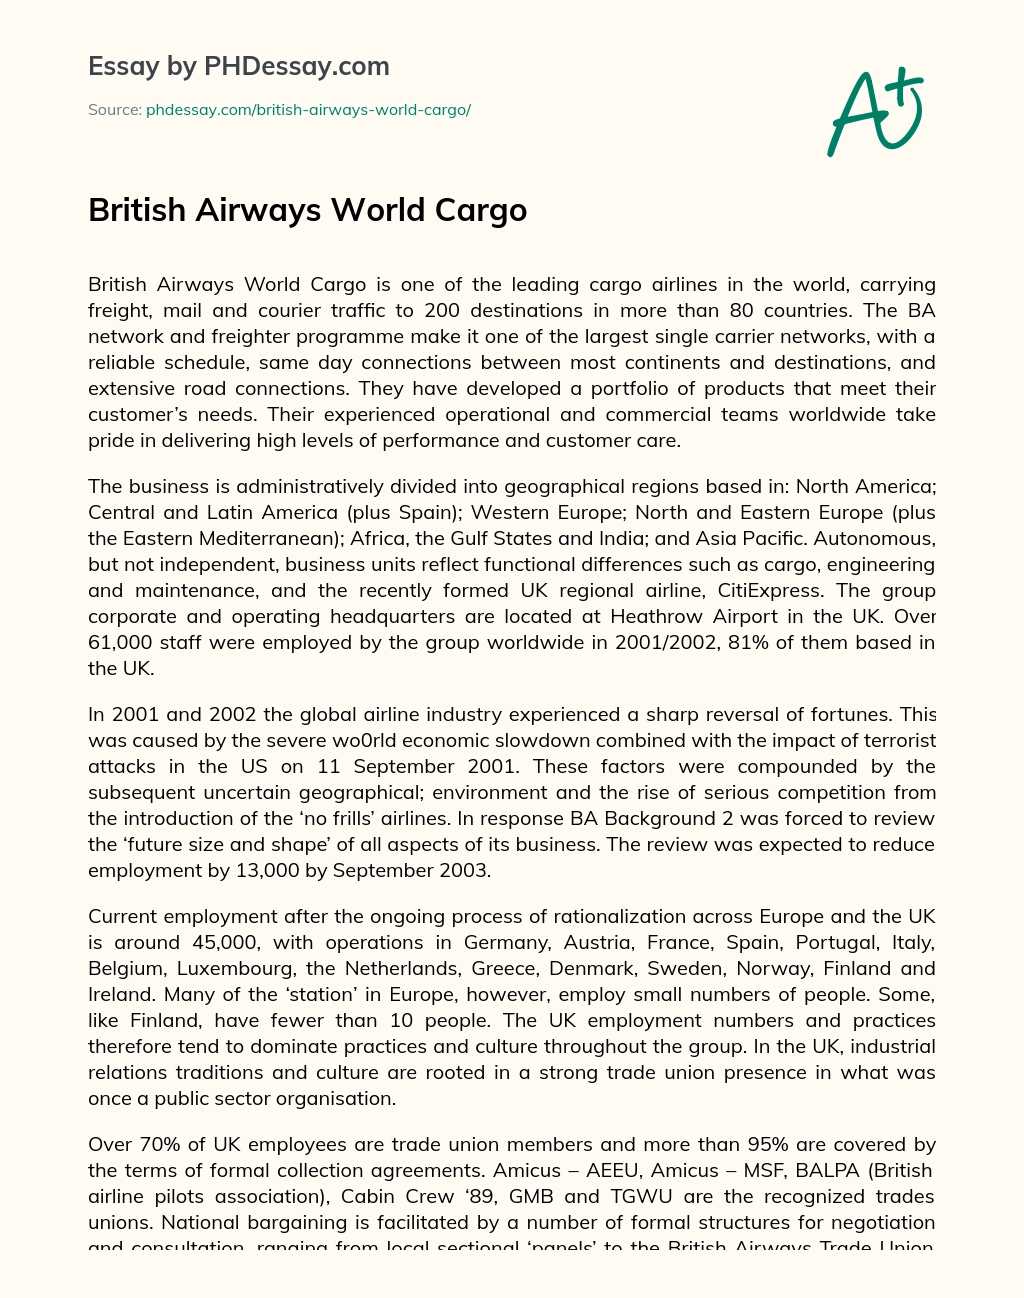 British Airways World Cargo essay